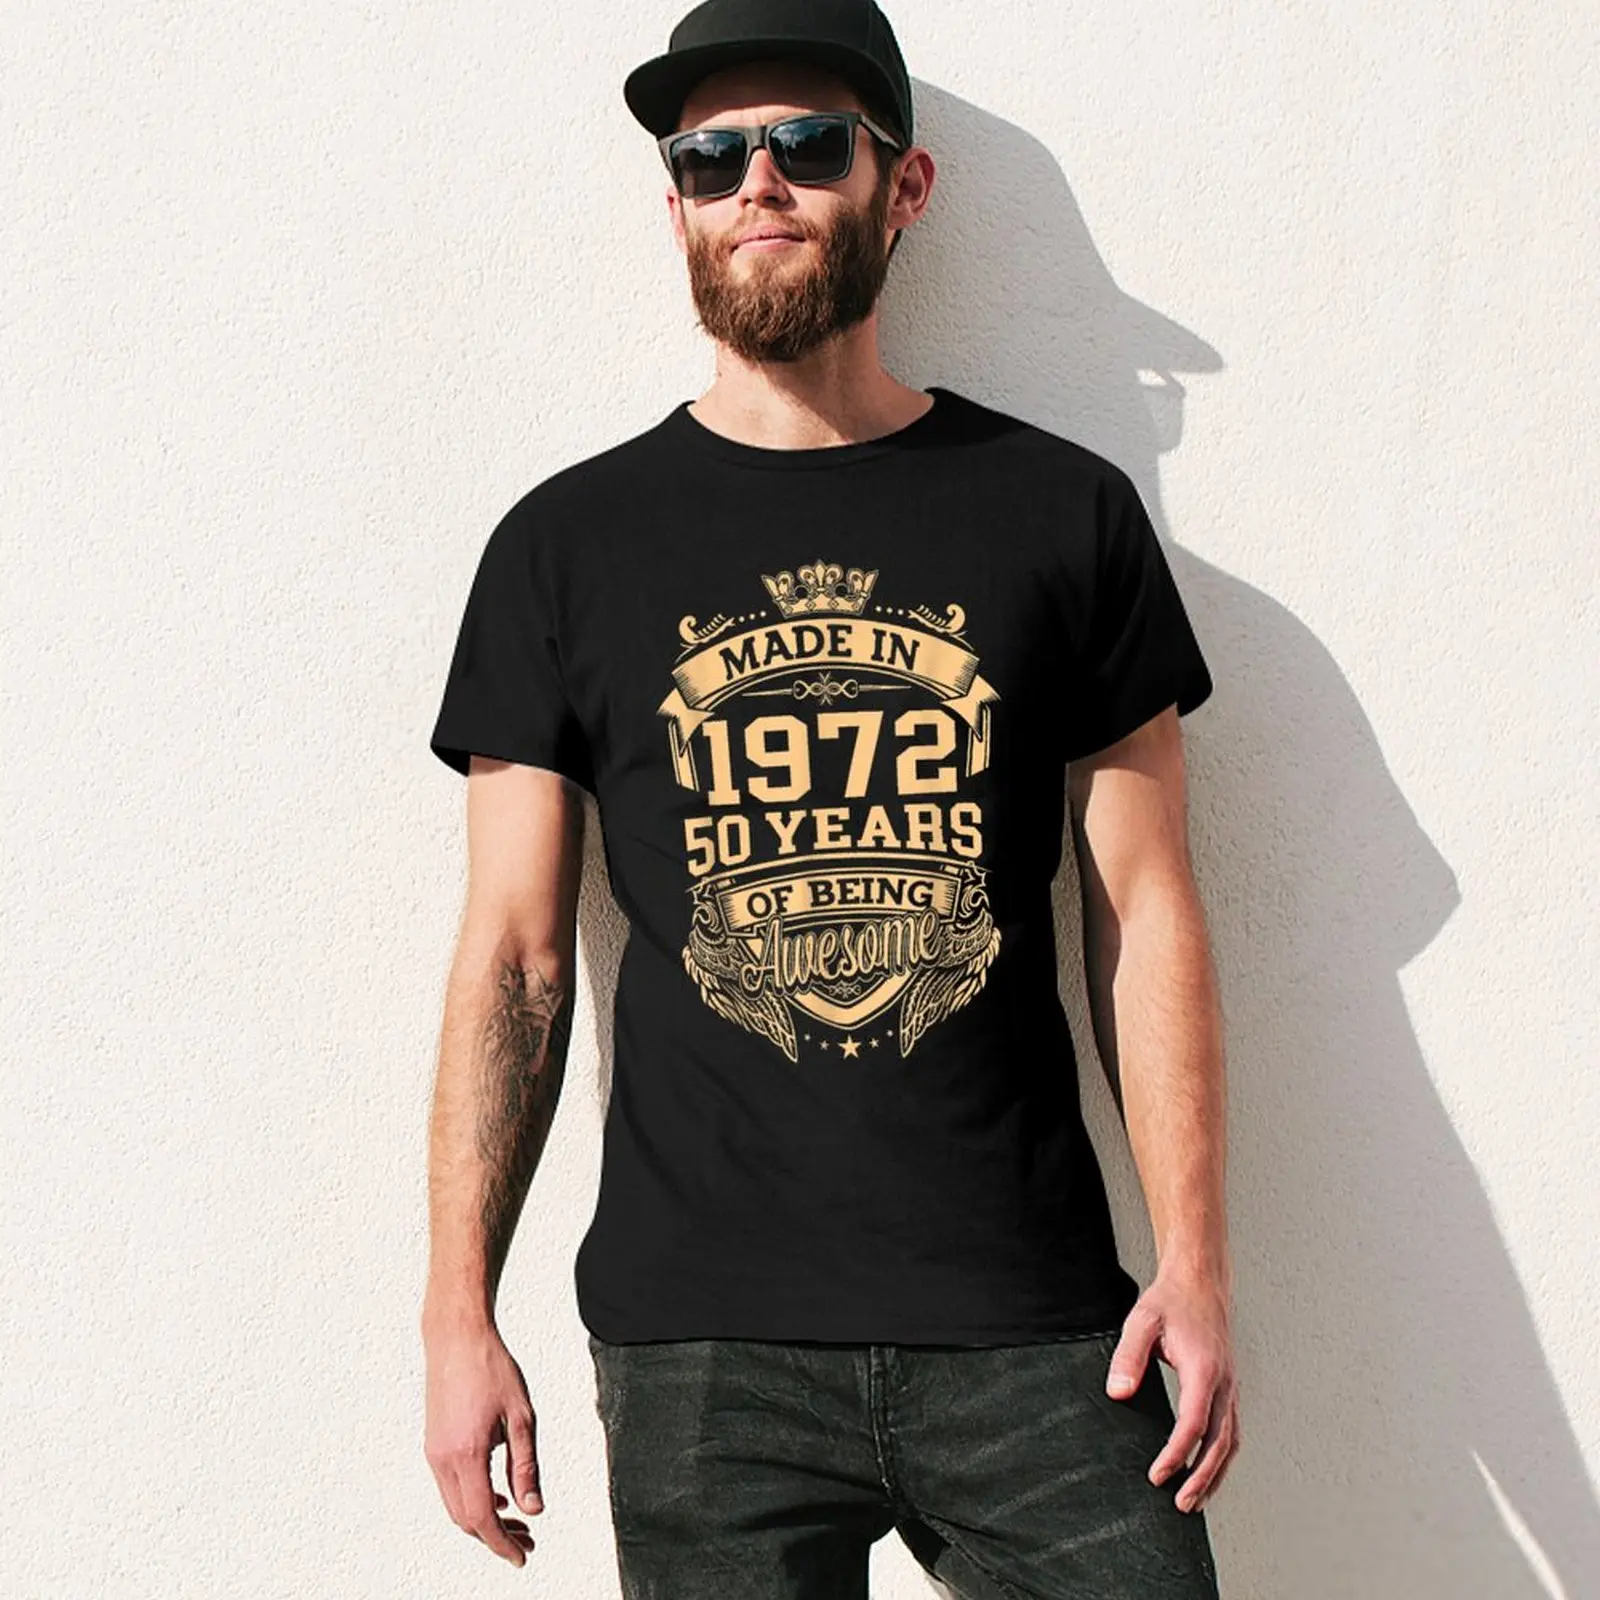 100% baumwolle Hergestellt In 1972 50 Jahre Als Genial 50th Geburtstag männer Neuheit T-Shirt T Street Frauen Casual harajuku